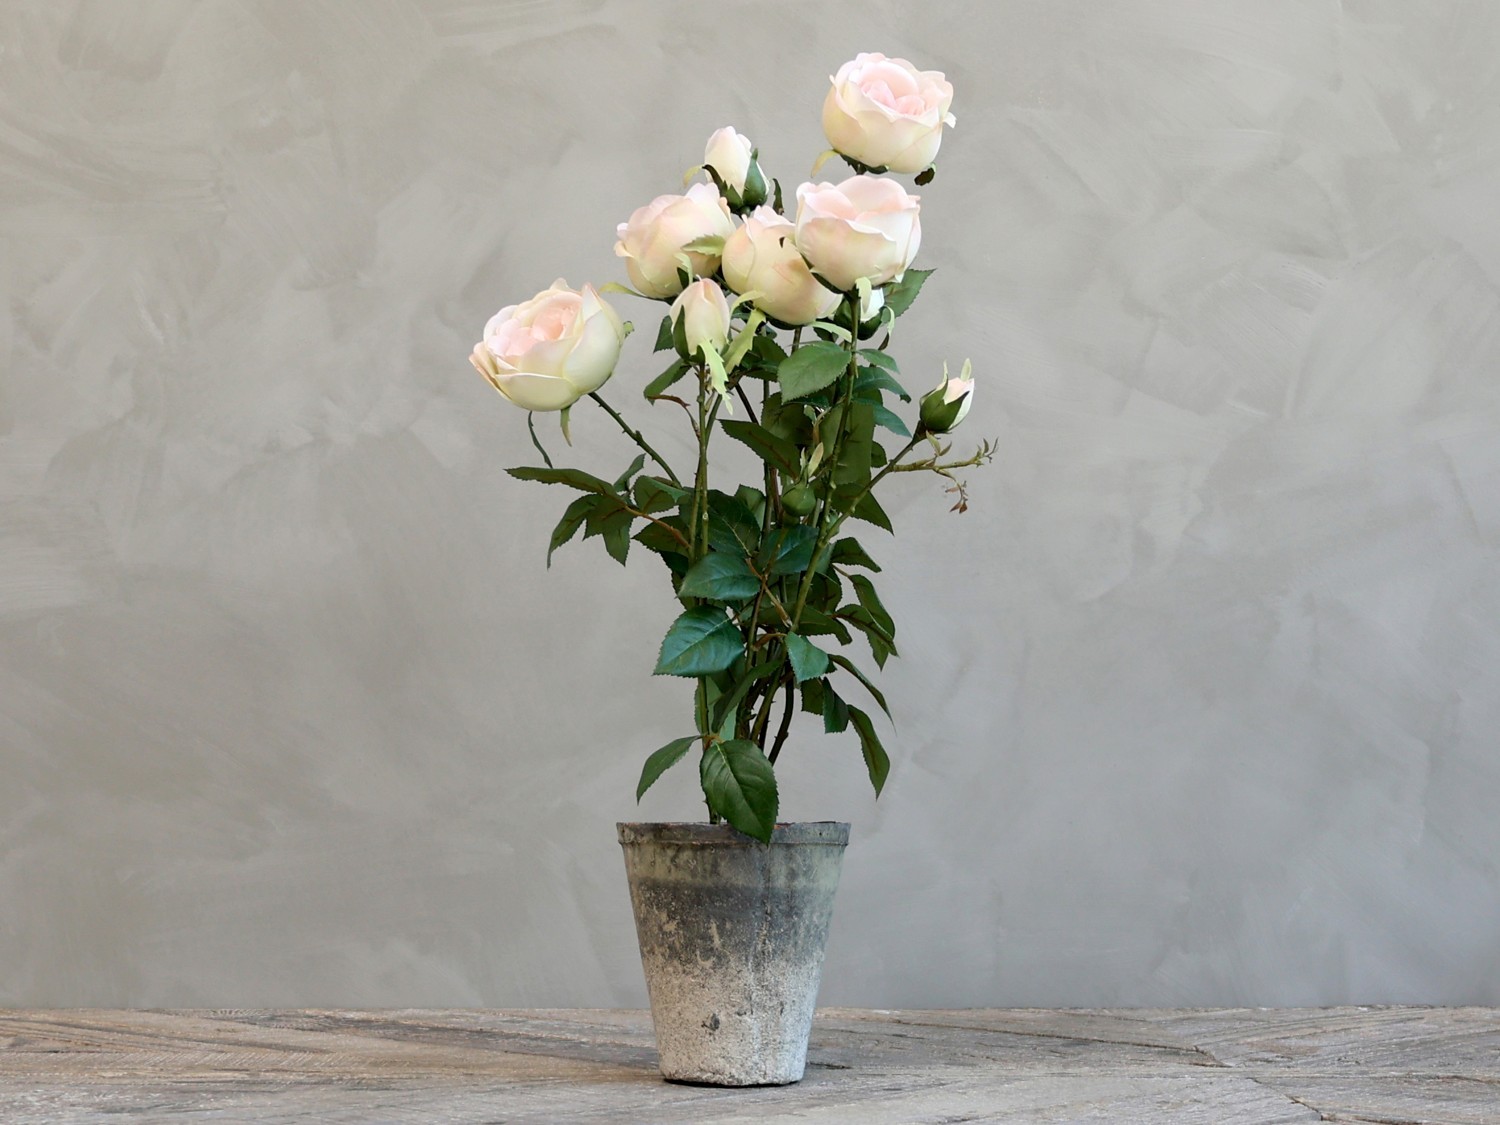 Dekorace umělá růžová růže v květináči Old - 52 cm Chic Antique